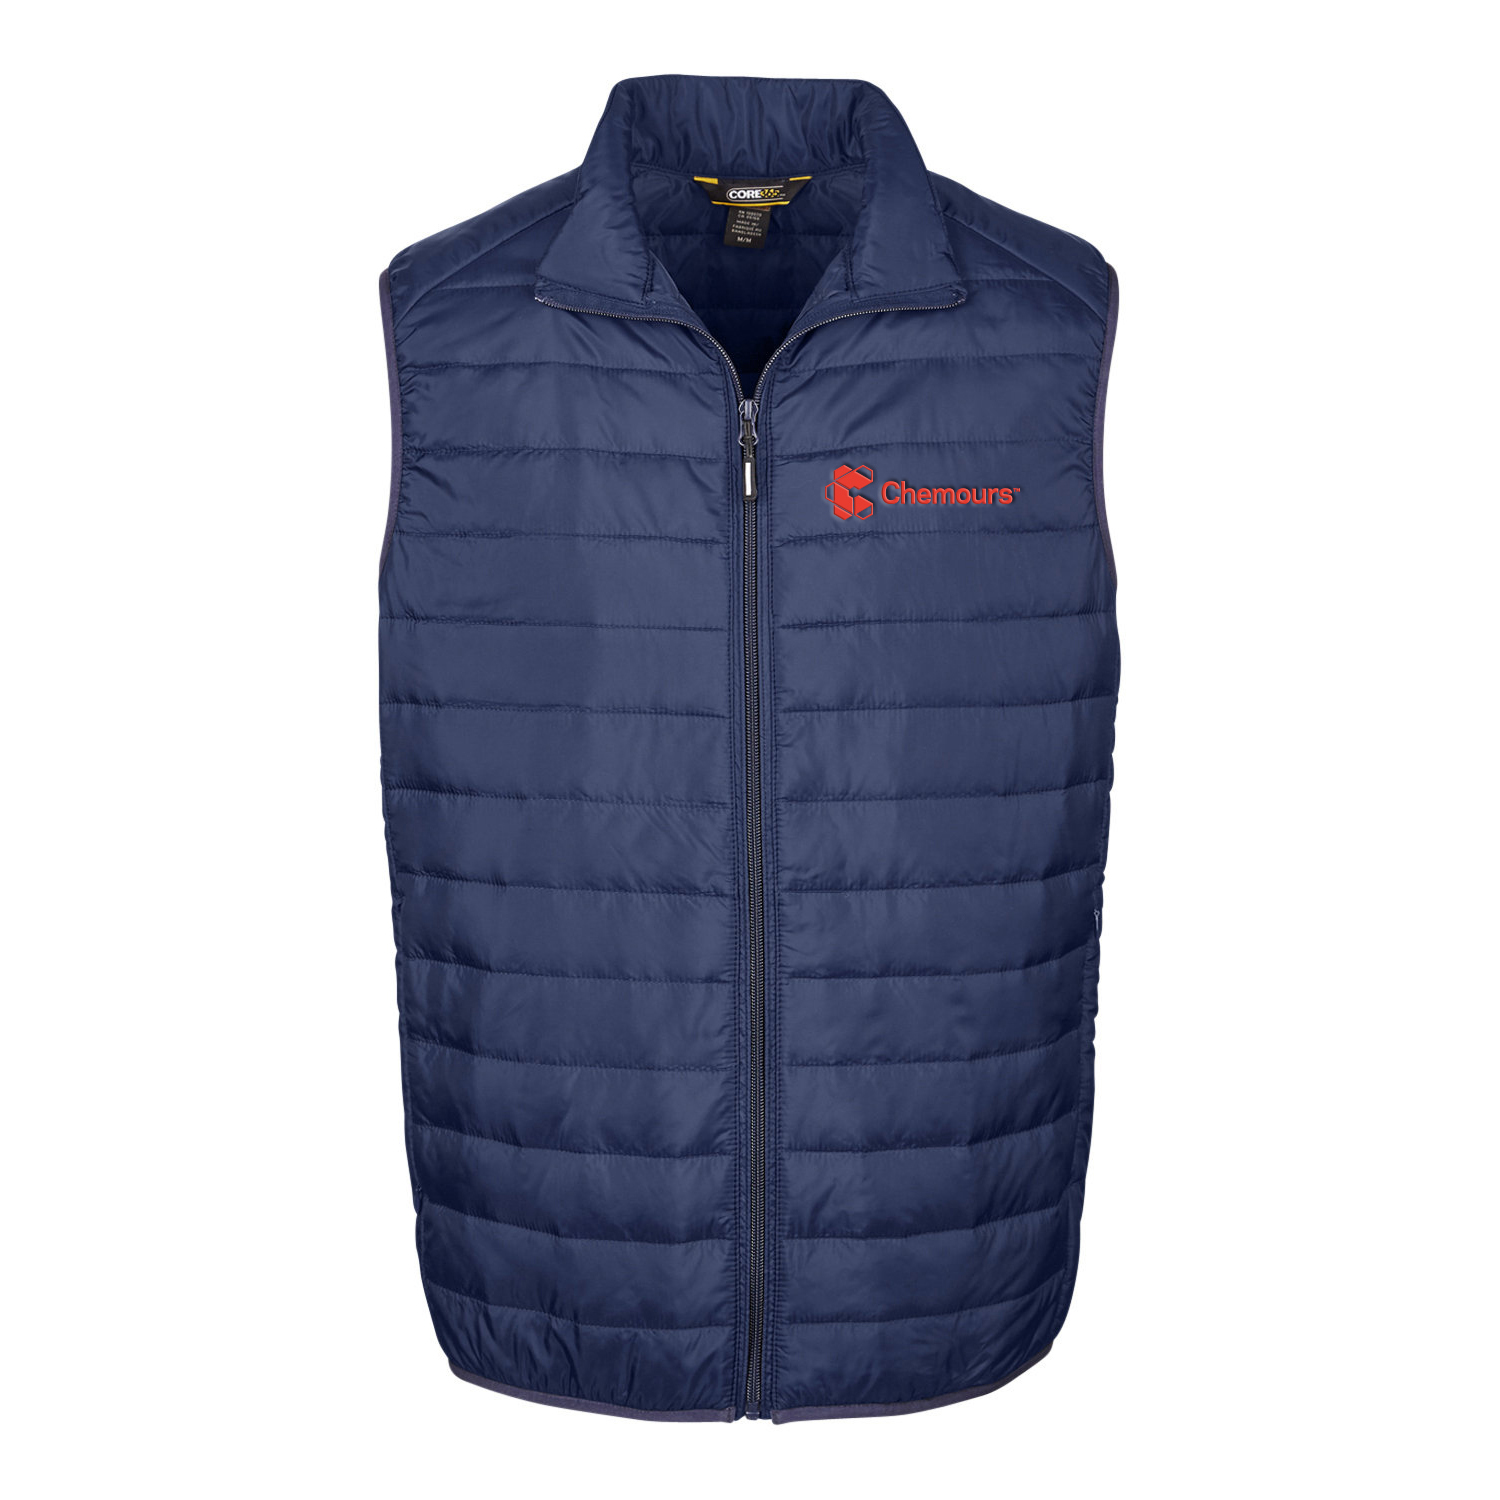 Core 365 Men's Prevail Packable Puffer Vest